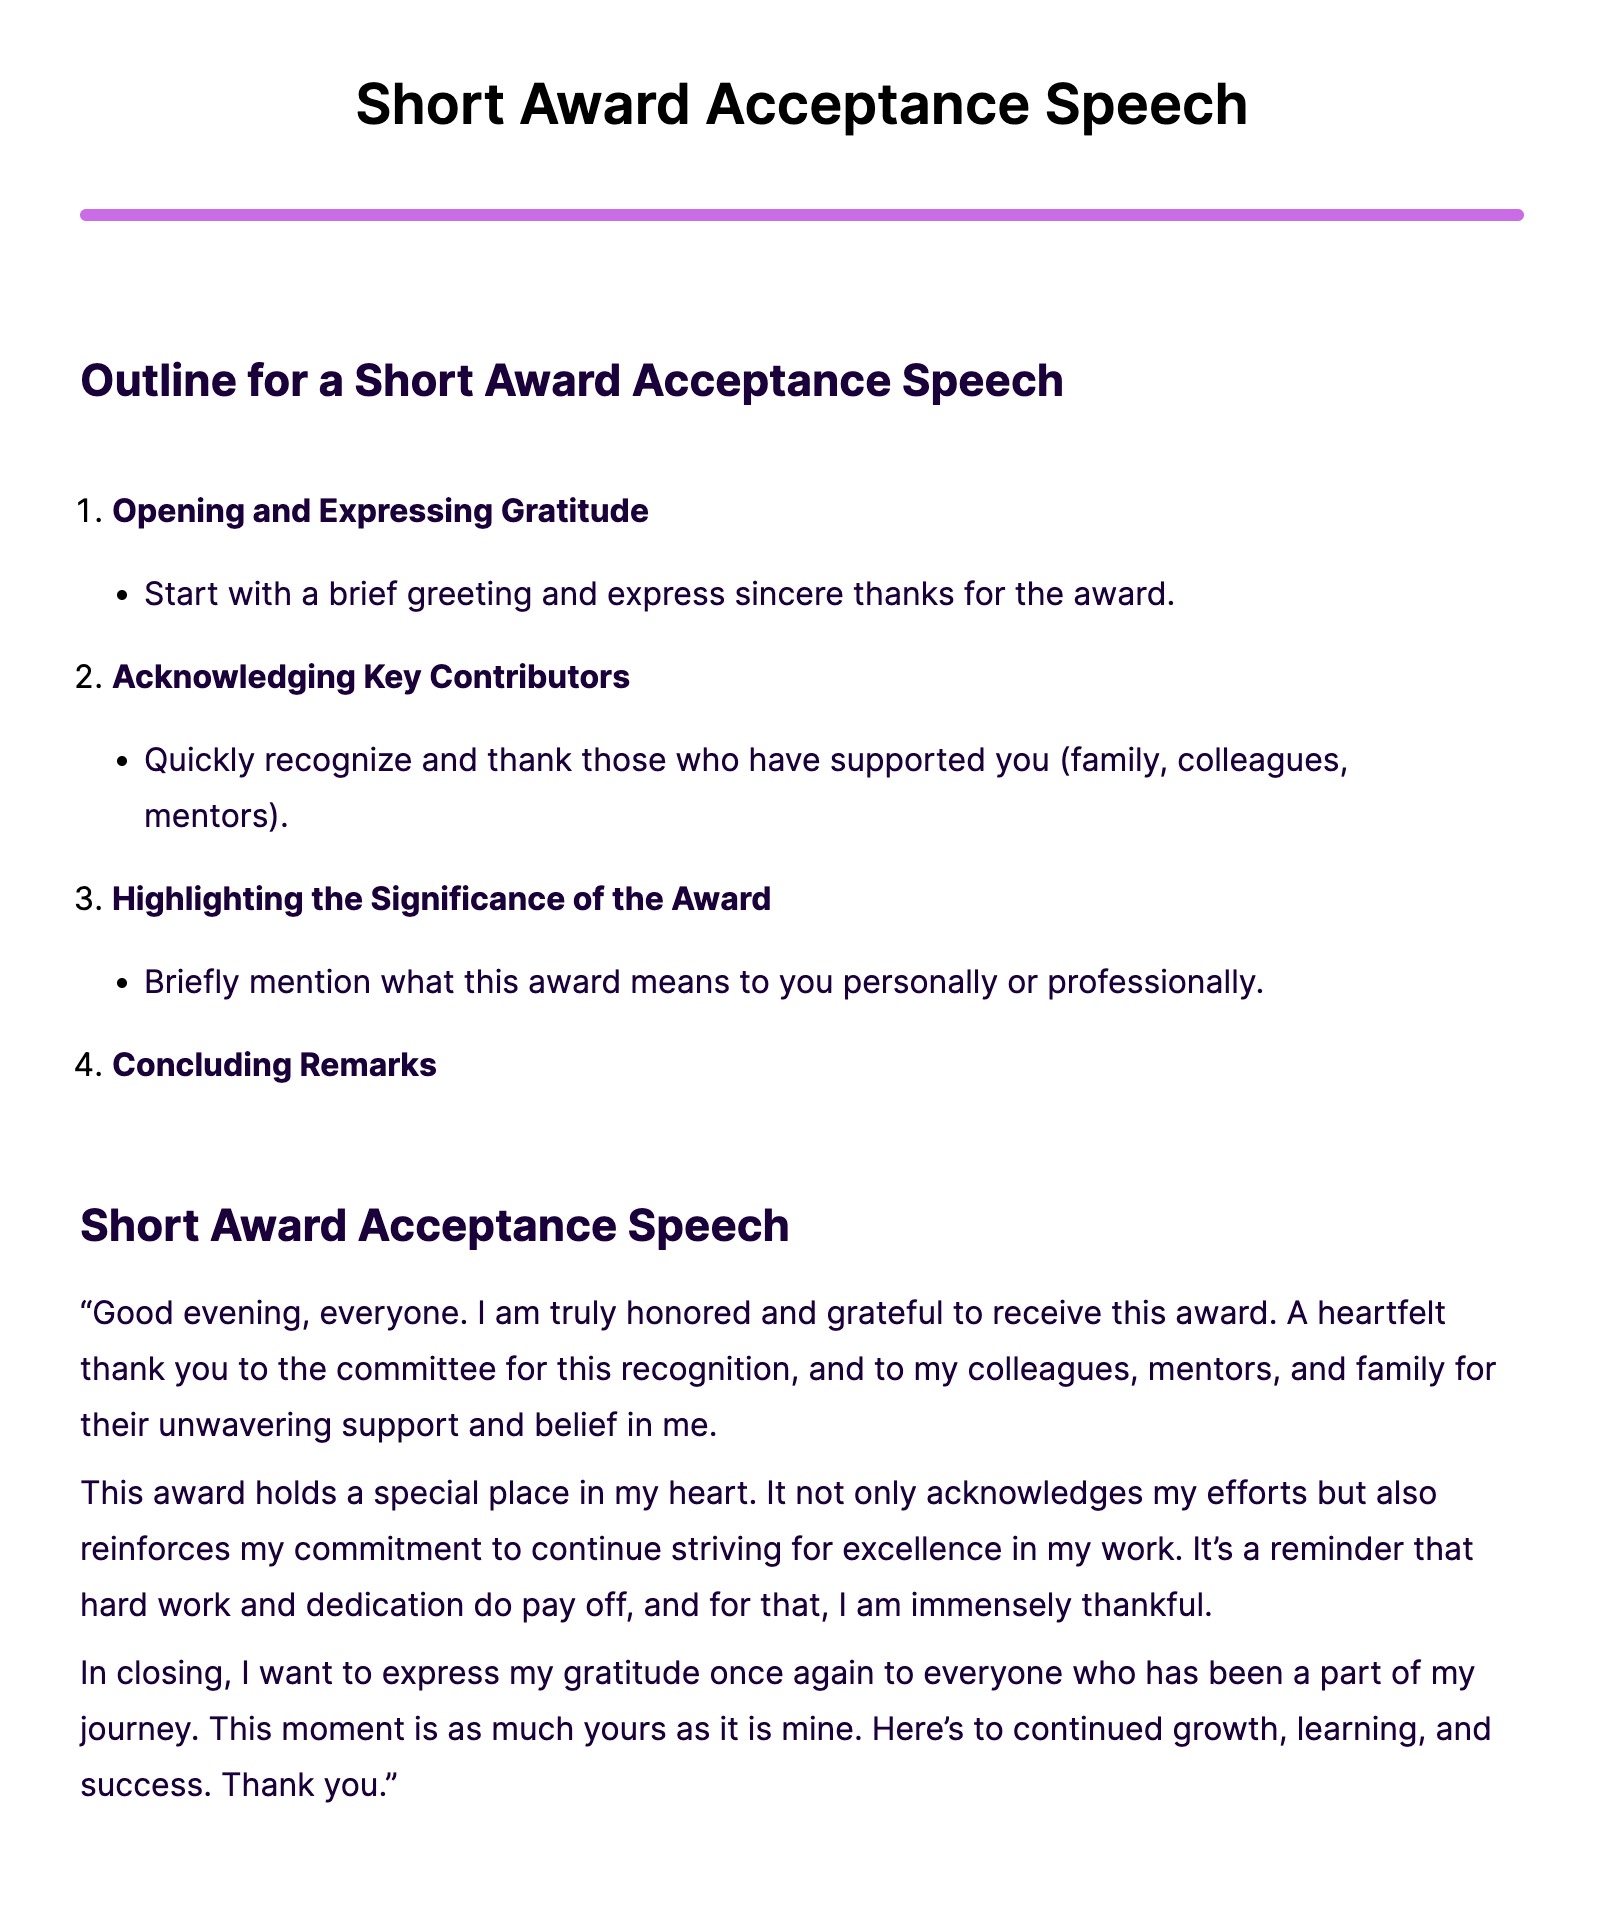 Short Award Acceptance Speech